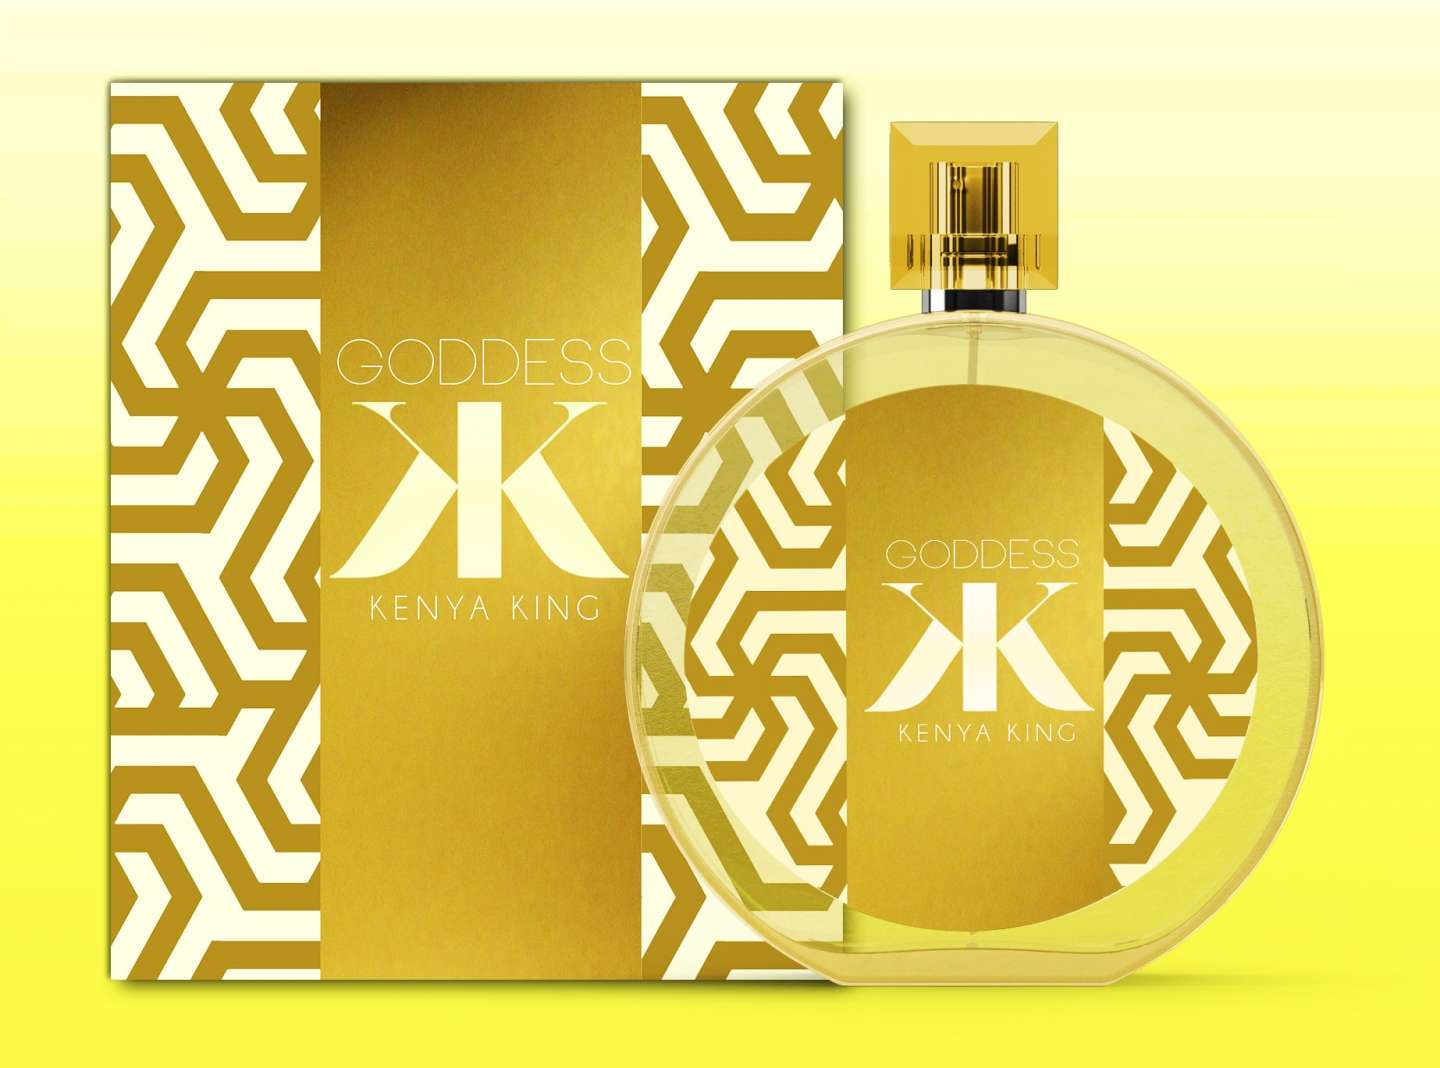 Kenya King Perfume